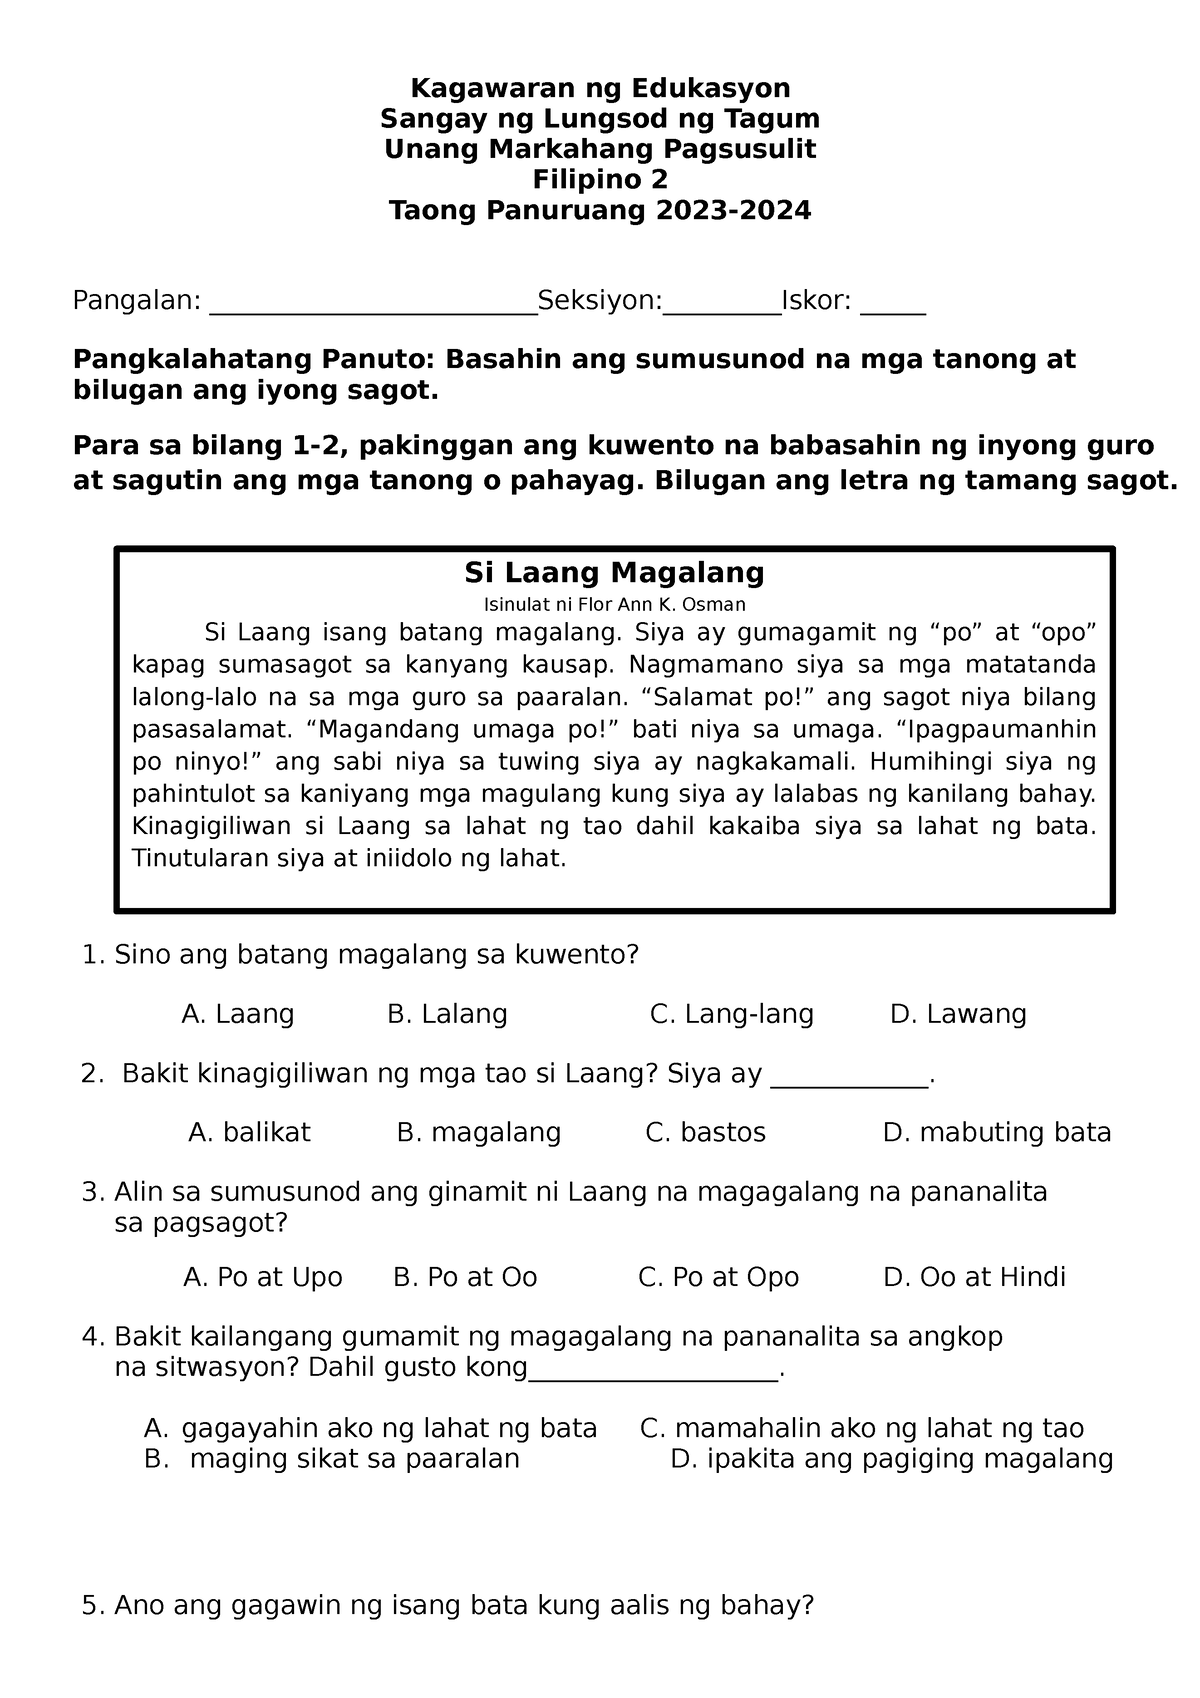 Filipino 2 Q1 Test Questions Final Kagawaran Ng Edukasyon Sangay Ng Lungsod Ng Tagum Unang 6525